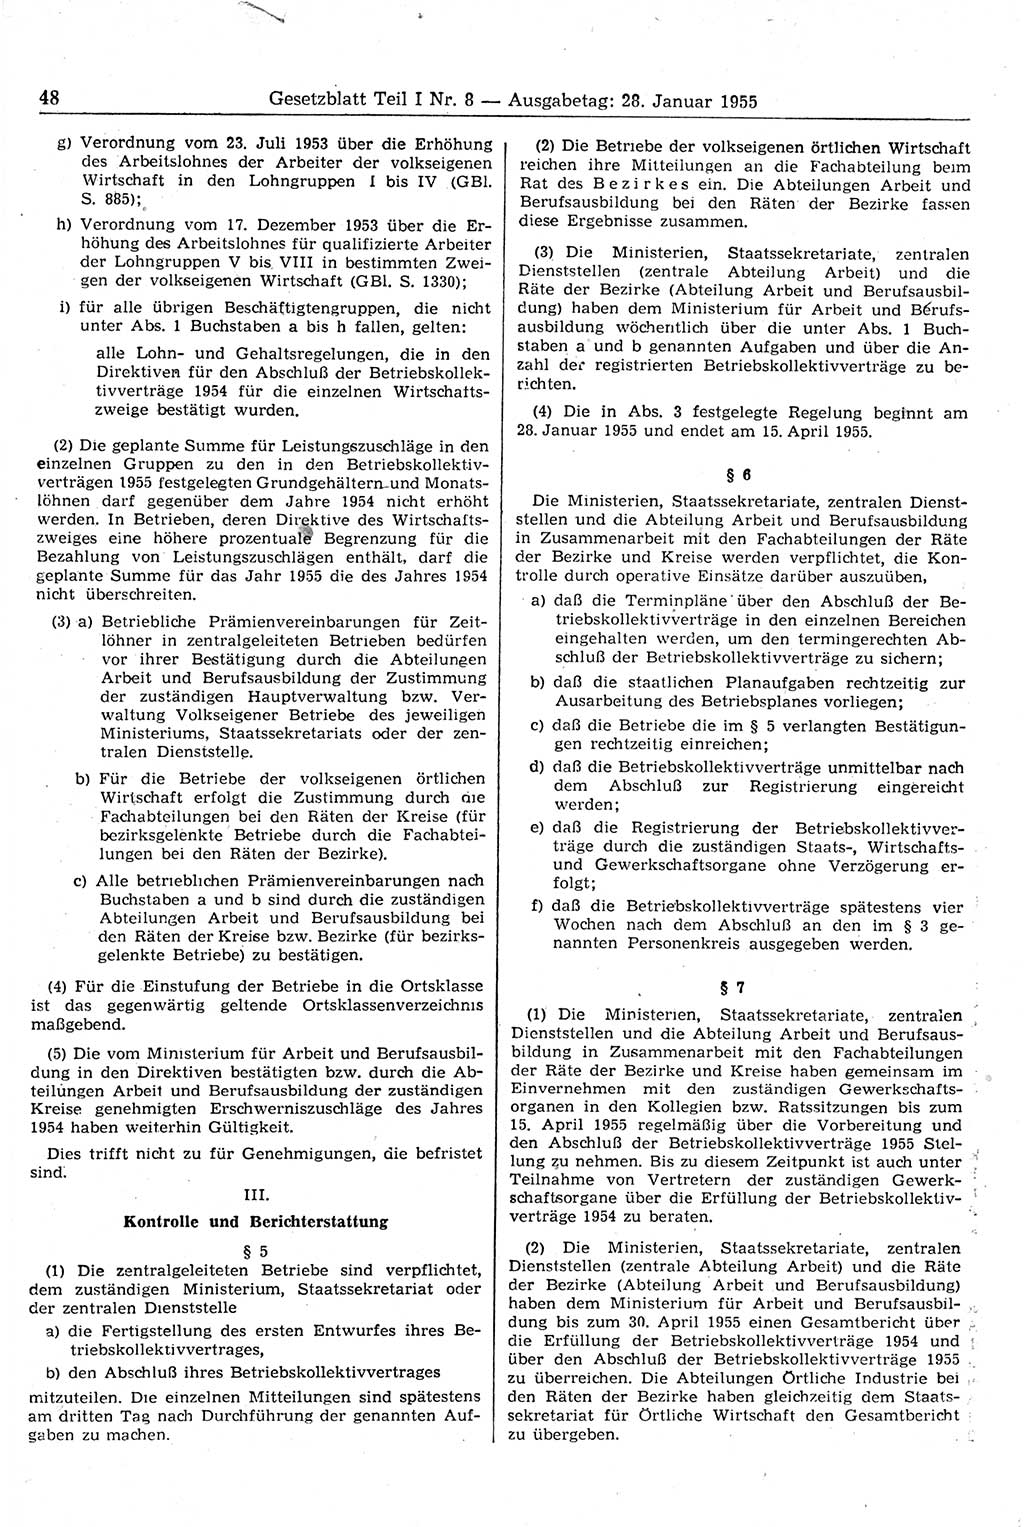 Gesetzblatt (GBl.) der Deutschen Demokratischen Republik (DDR) Teil Ⅰ 1955, Seite 48 (GBl. DDR Ⅰ 1955, S. 48)